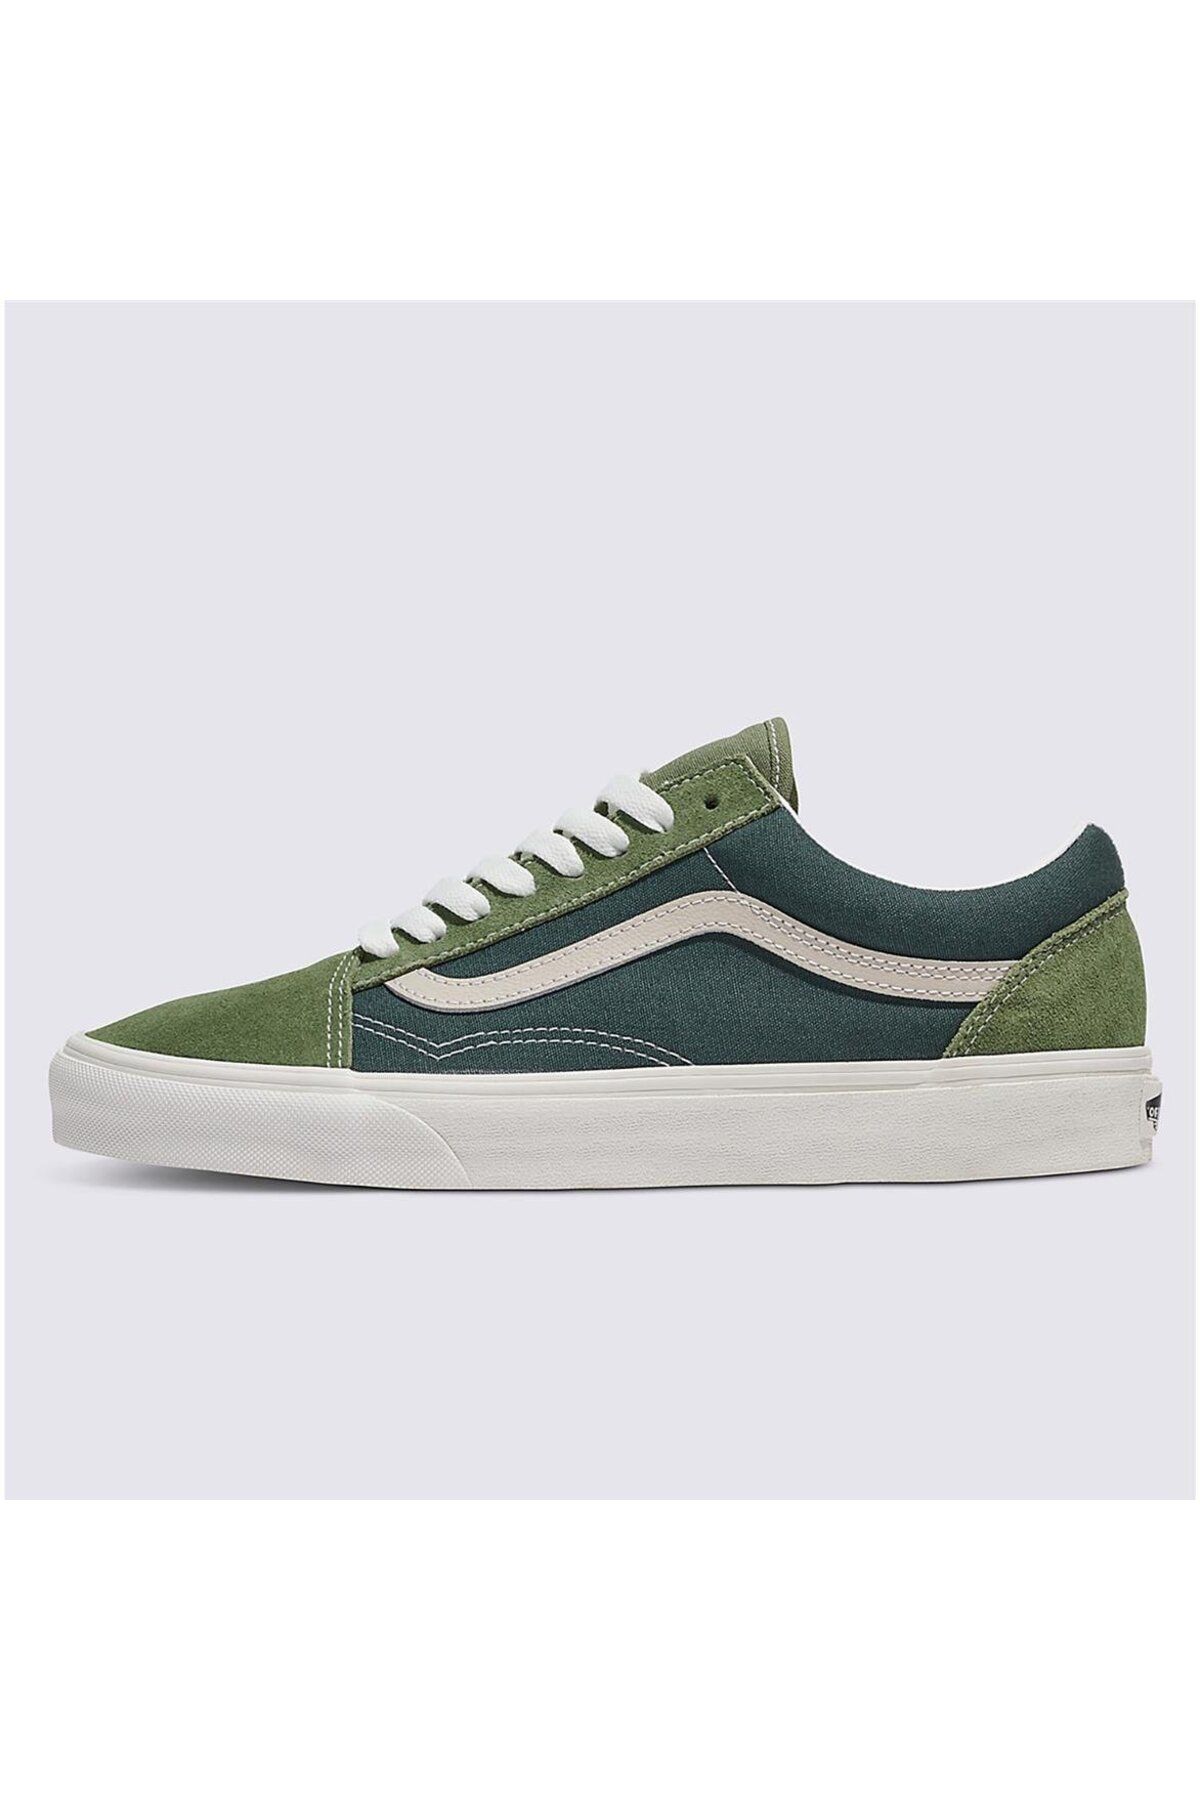 Vans Old Skool Green Unisex Yeşil Sneaker